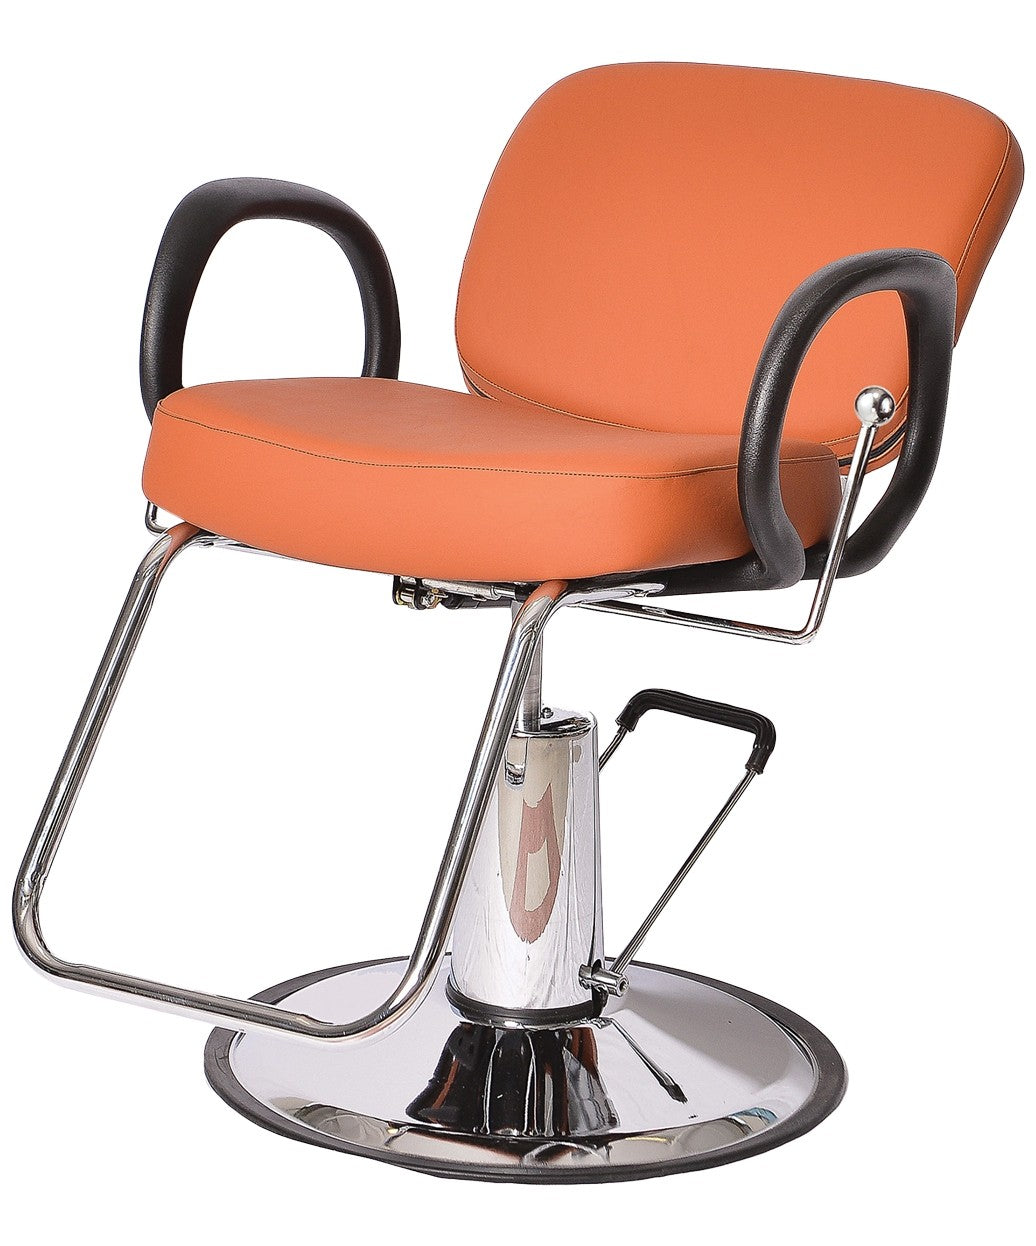 Pibbs 5446 Loop All-Purpose Chair